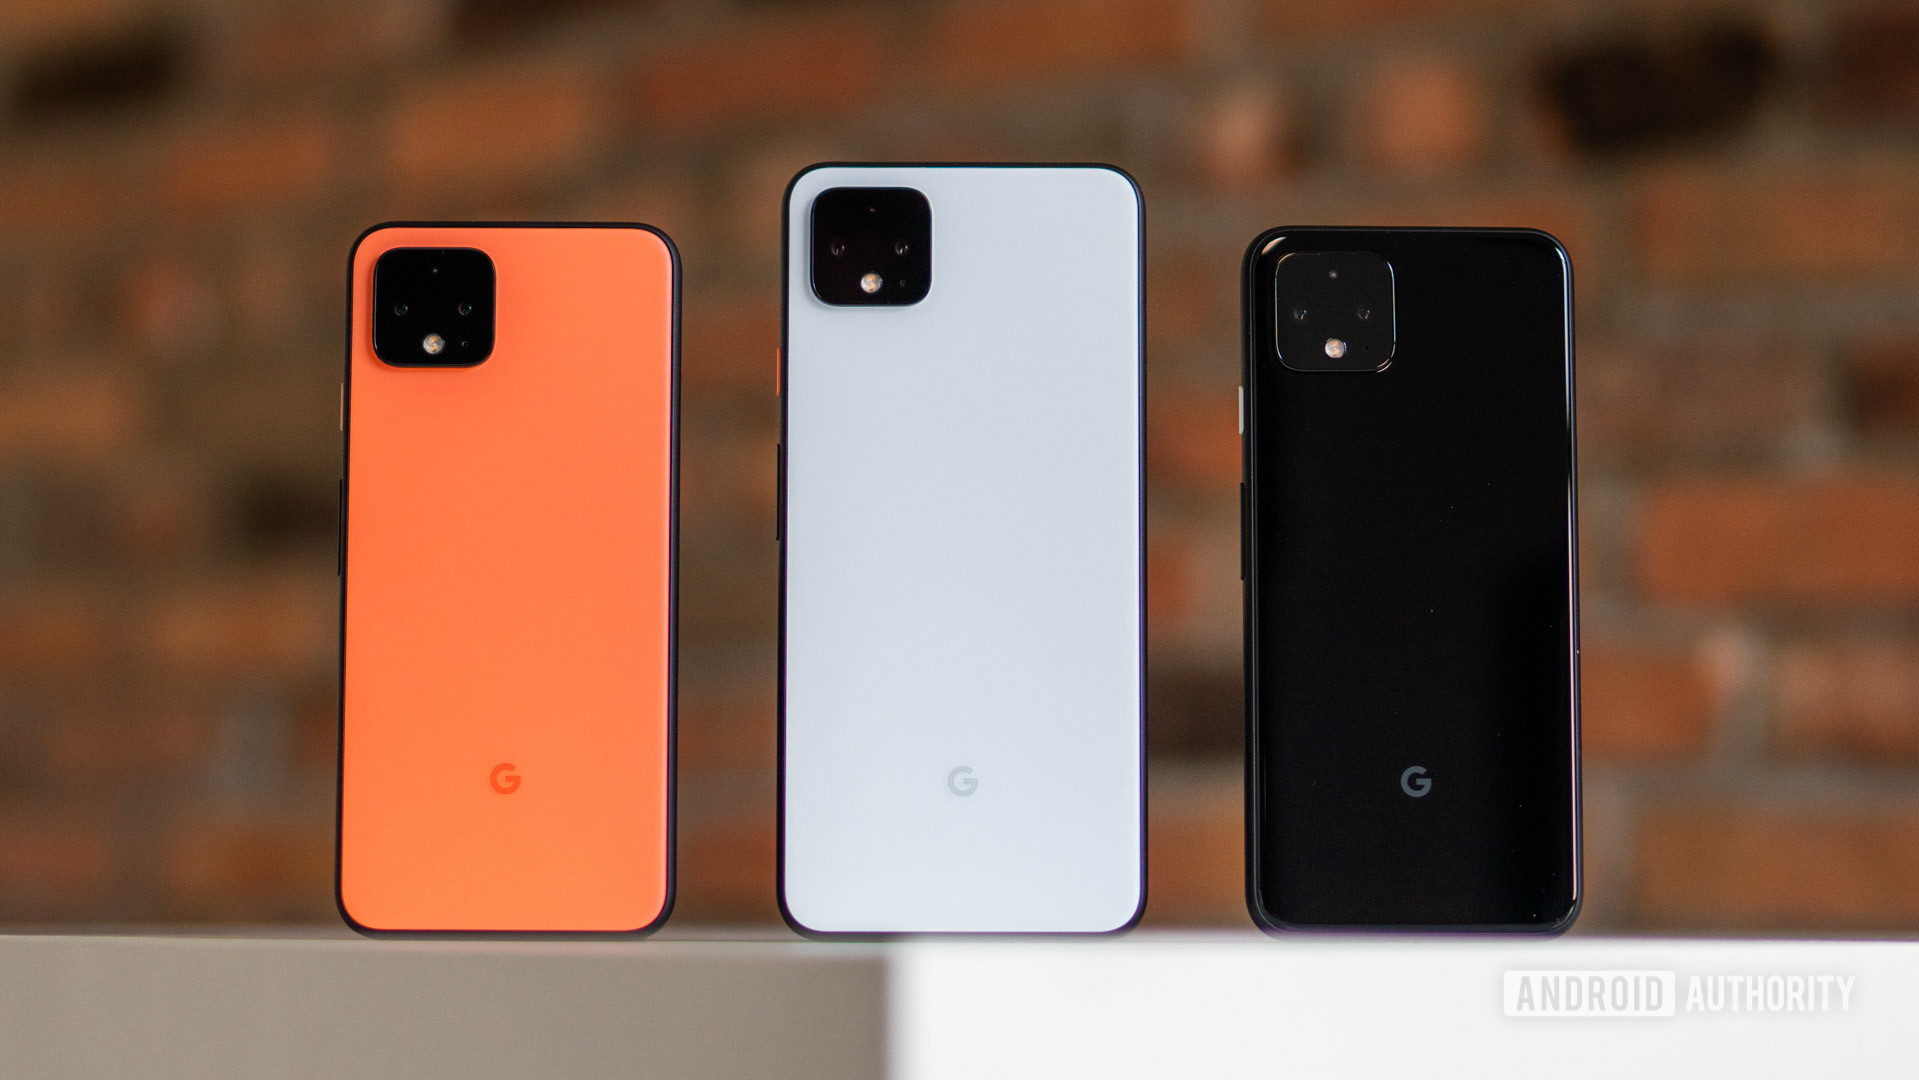 Google Pixel 4和Pixel 4 XL尺寸和颜色